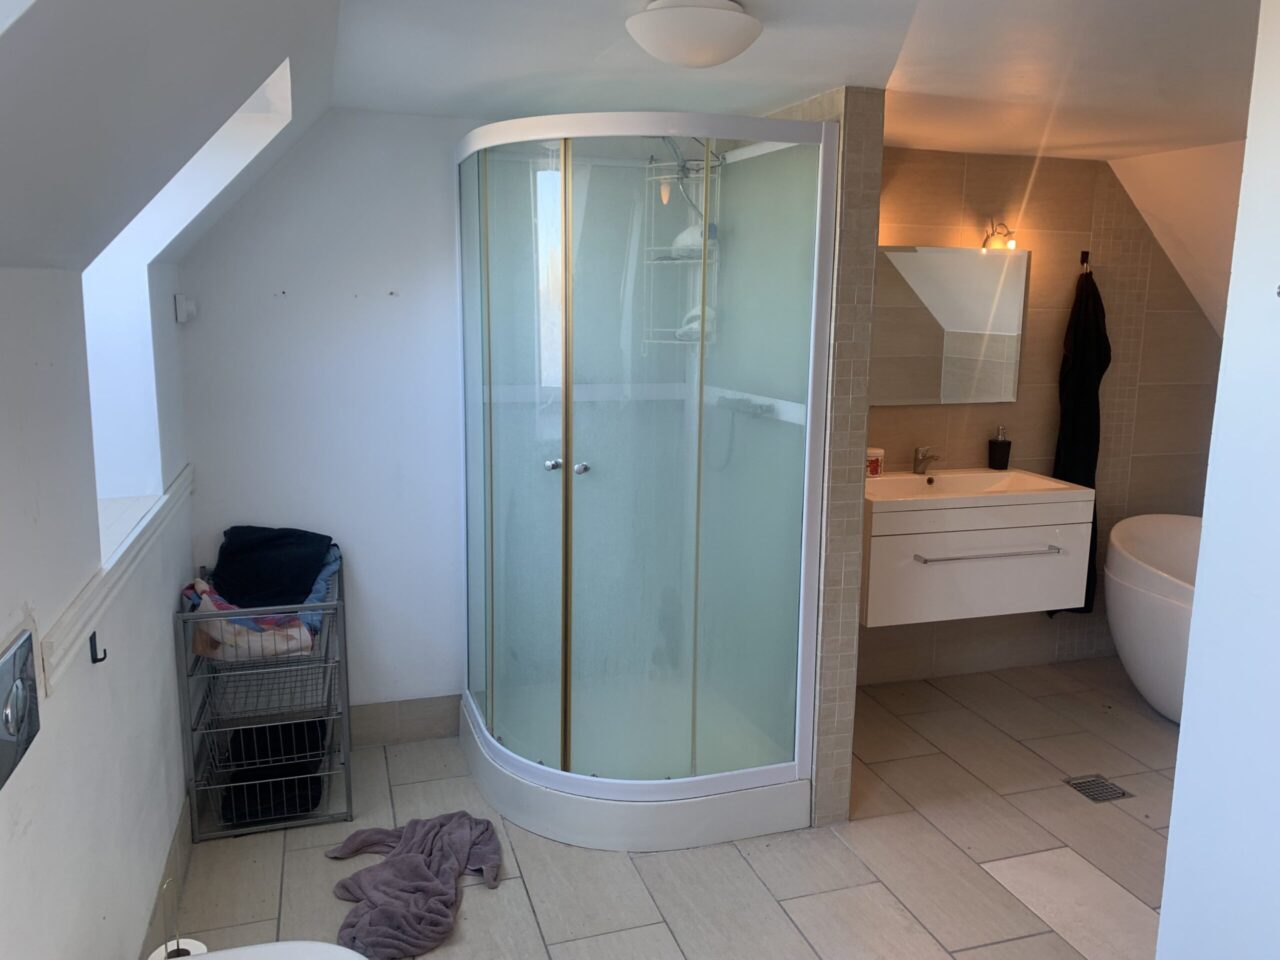 Investeringsejendom i Christiansfeld - Lyst badeværelse med hvide vægge og lyse fliser, der er en bruserkabine, håndvask og et spejl